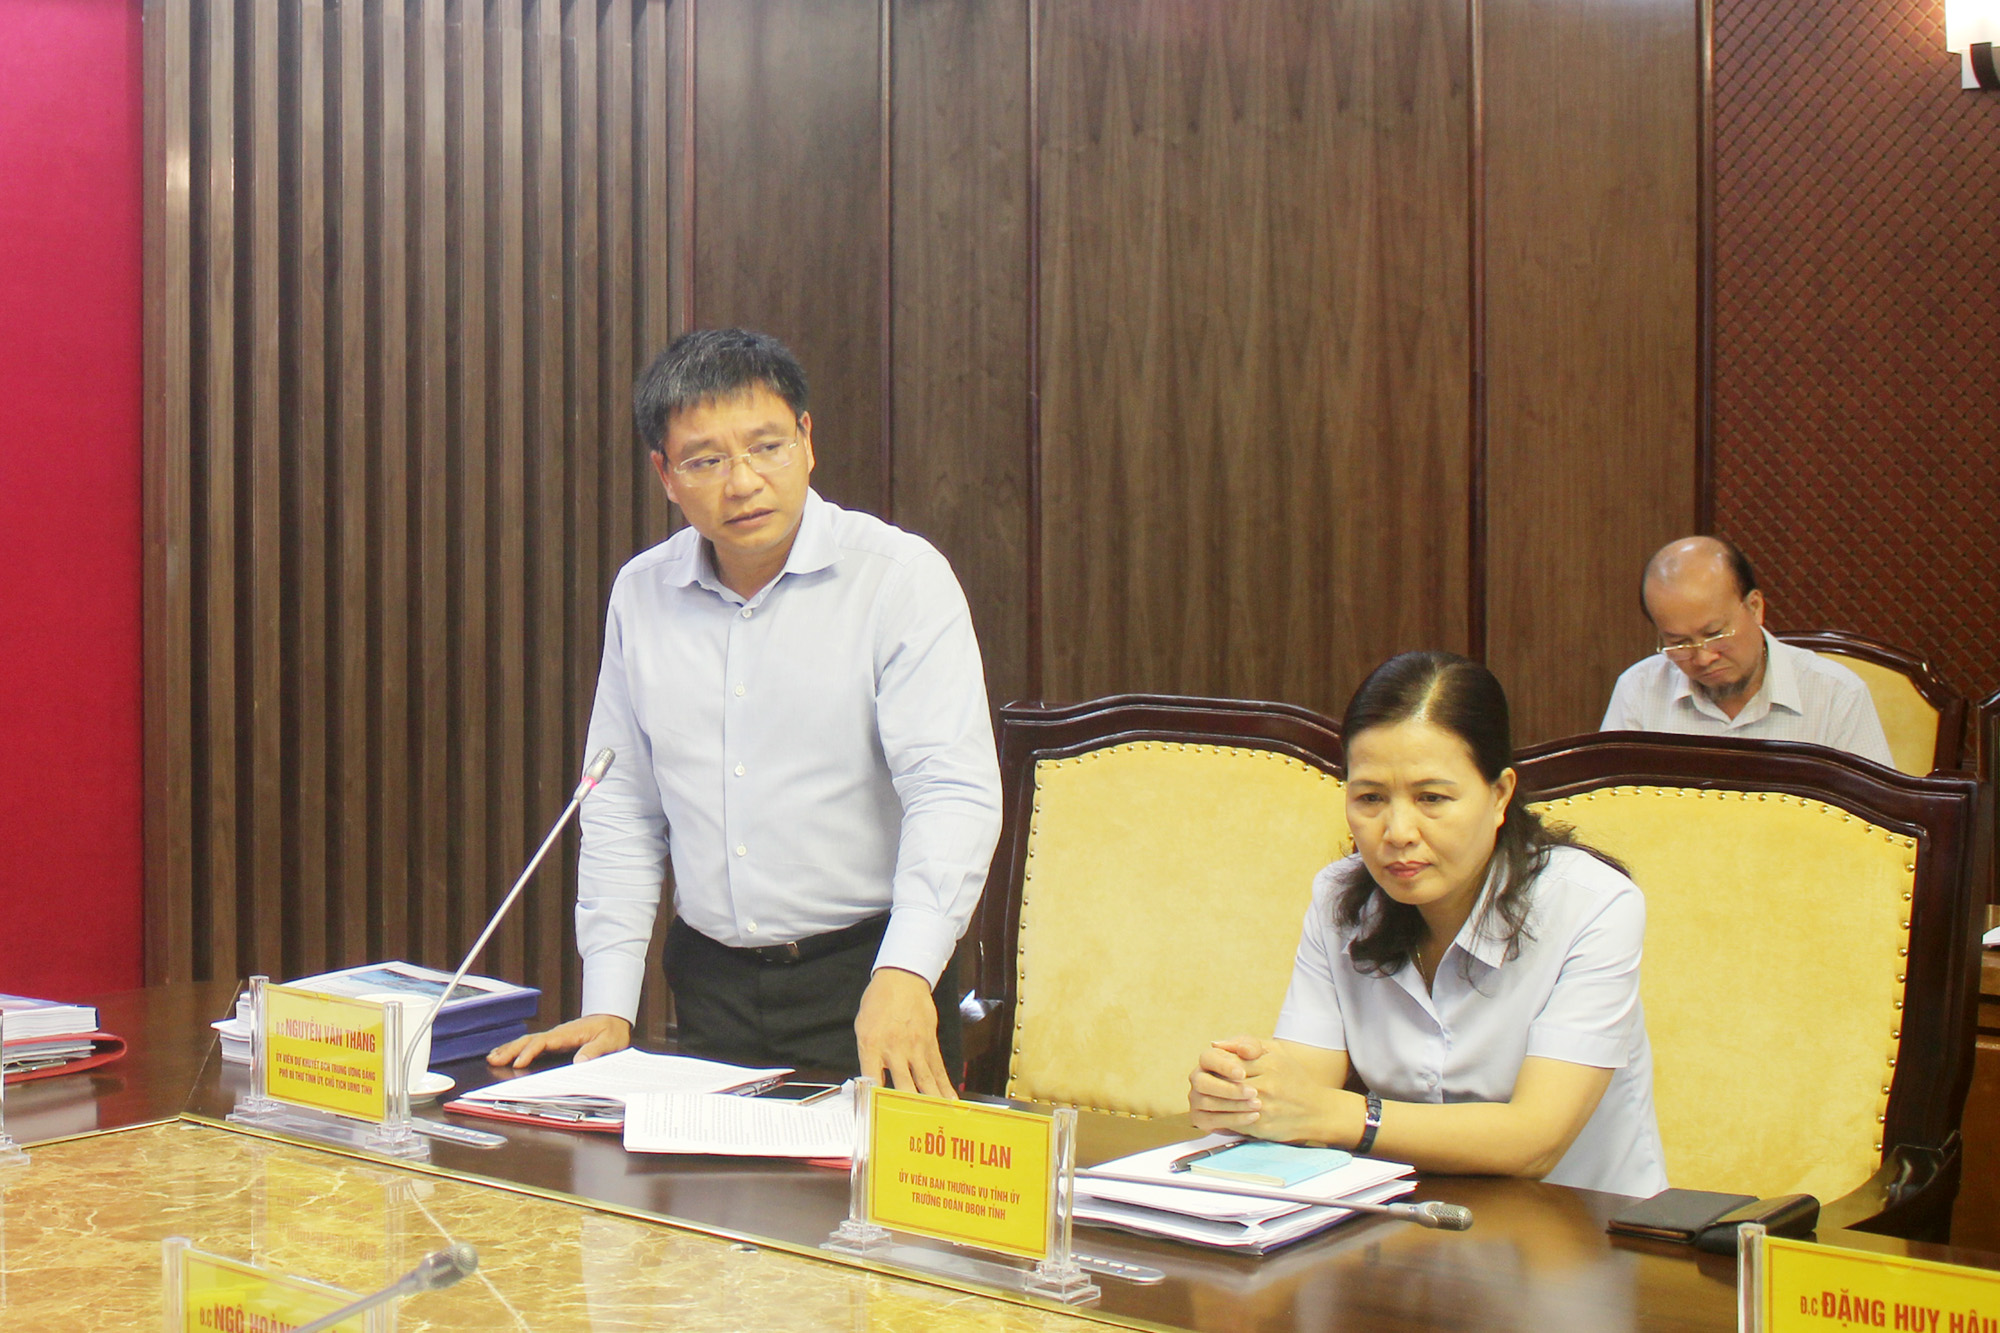 Đồng chí Nguyễn Văn Thắng, Phó Bí thư Tỉnh ủy, Chủ tịch UBND tỉnh, phát biểu tại hội nghị.